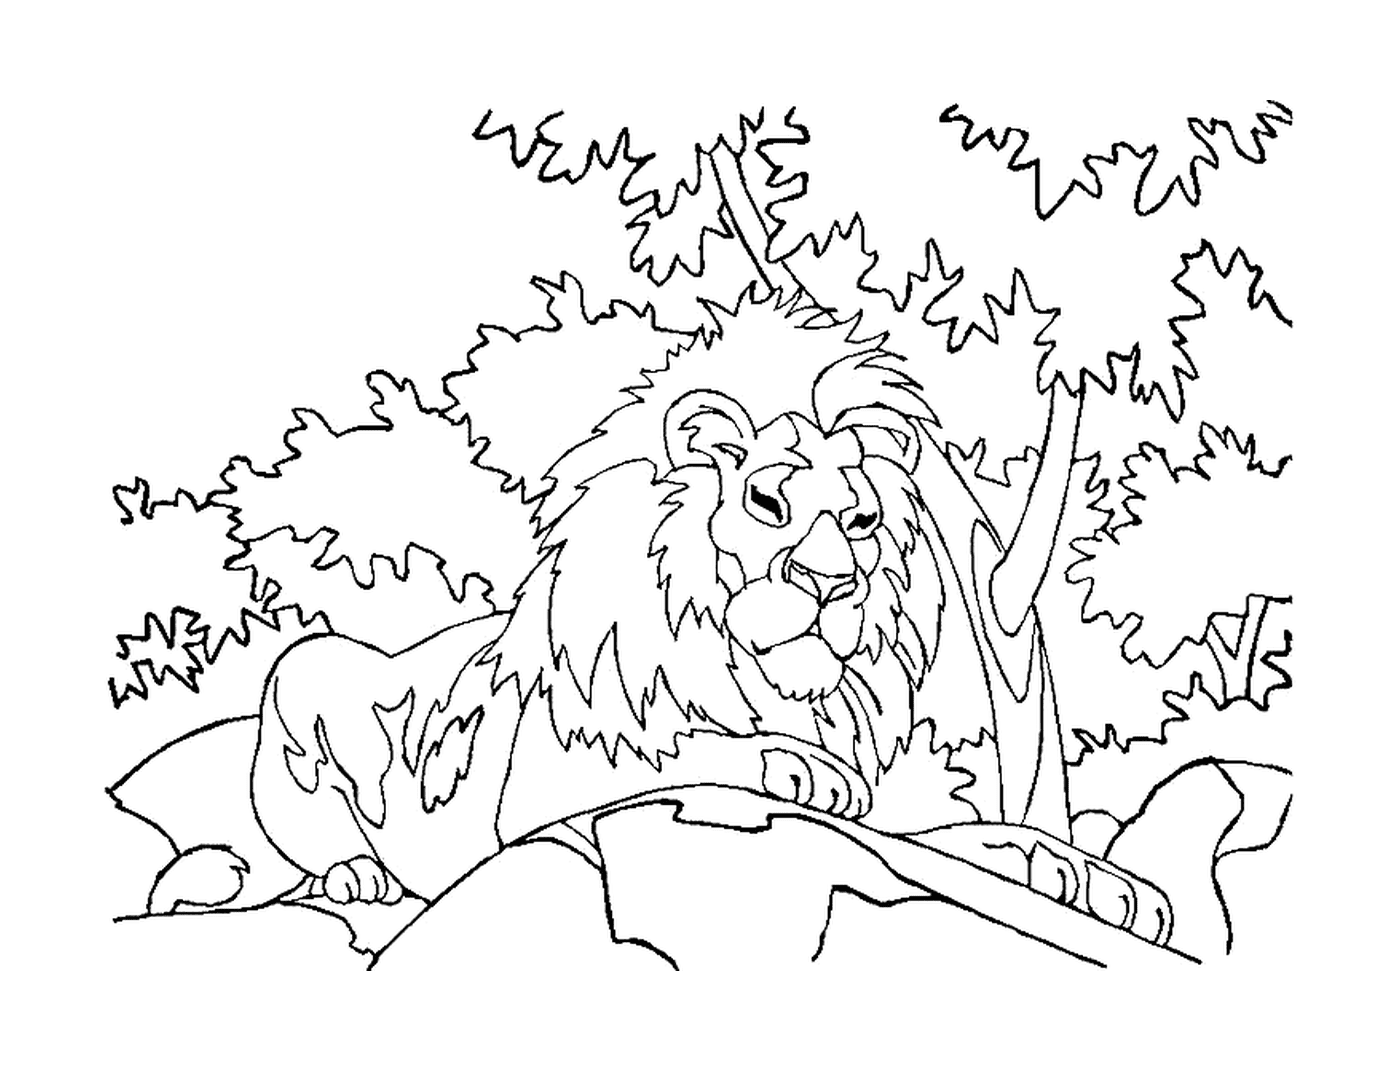  Доминантный лев, надзиратель равнины 